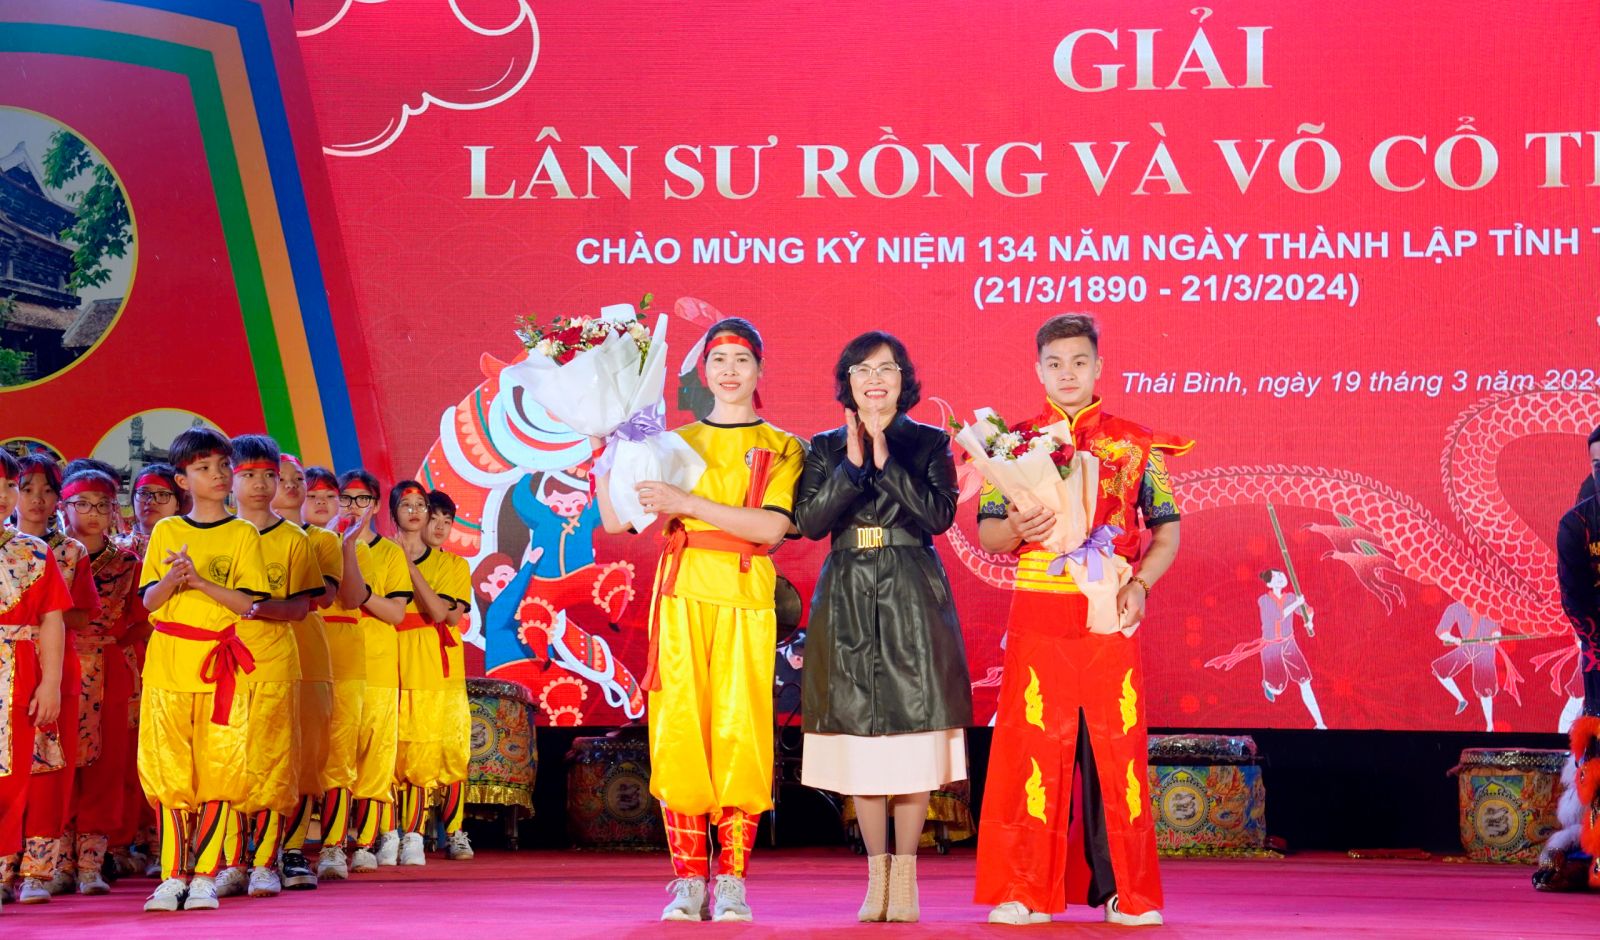 Sở Văn hóa, Thể thao và Du lịch tổ chức giải lân sư rồng và võ cổ truyền tỉnh Thái Bình